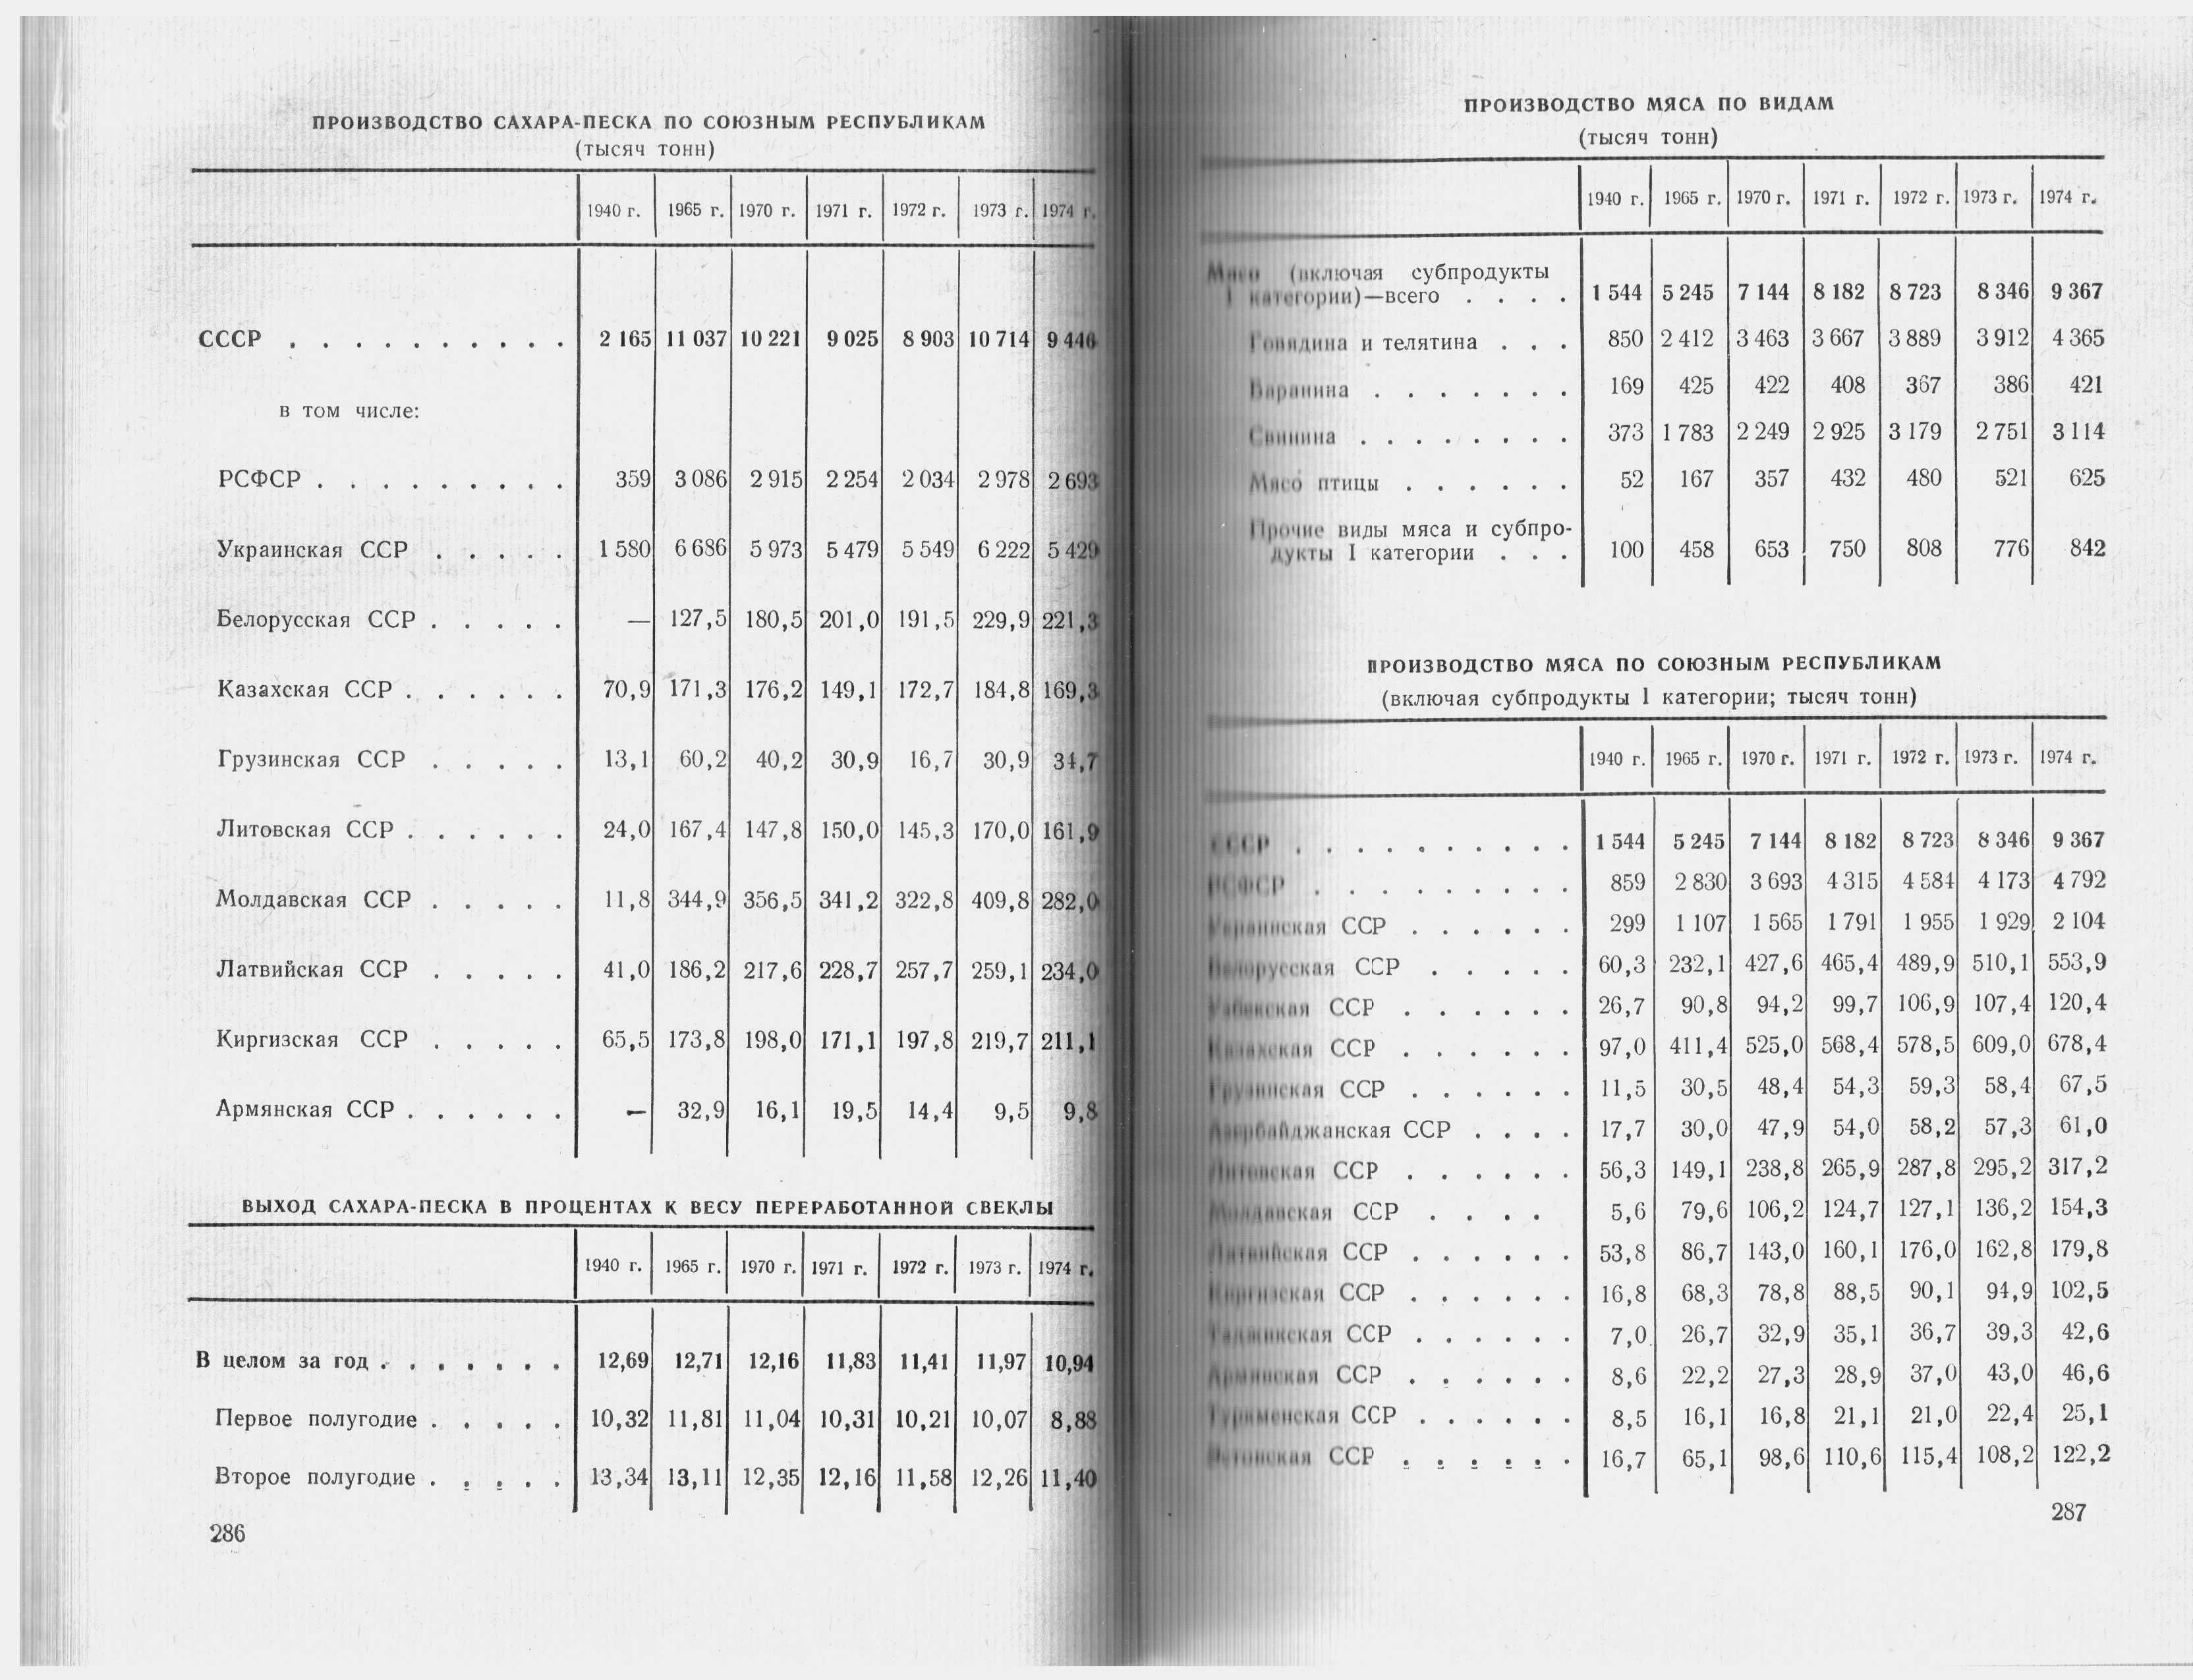 Народное хозяйство СССР в 1974 г. Статистический ежегодник. М., 1975